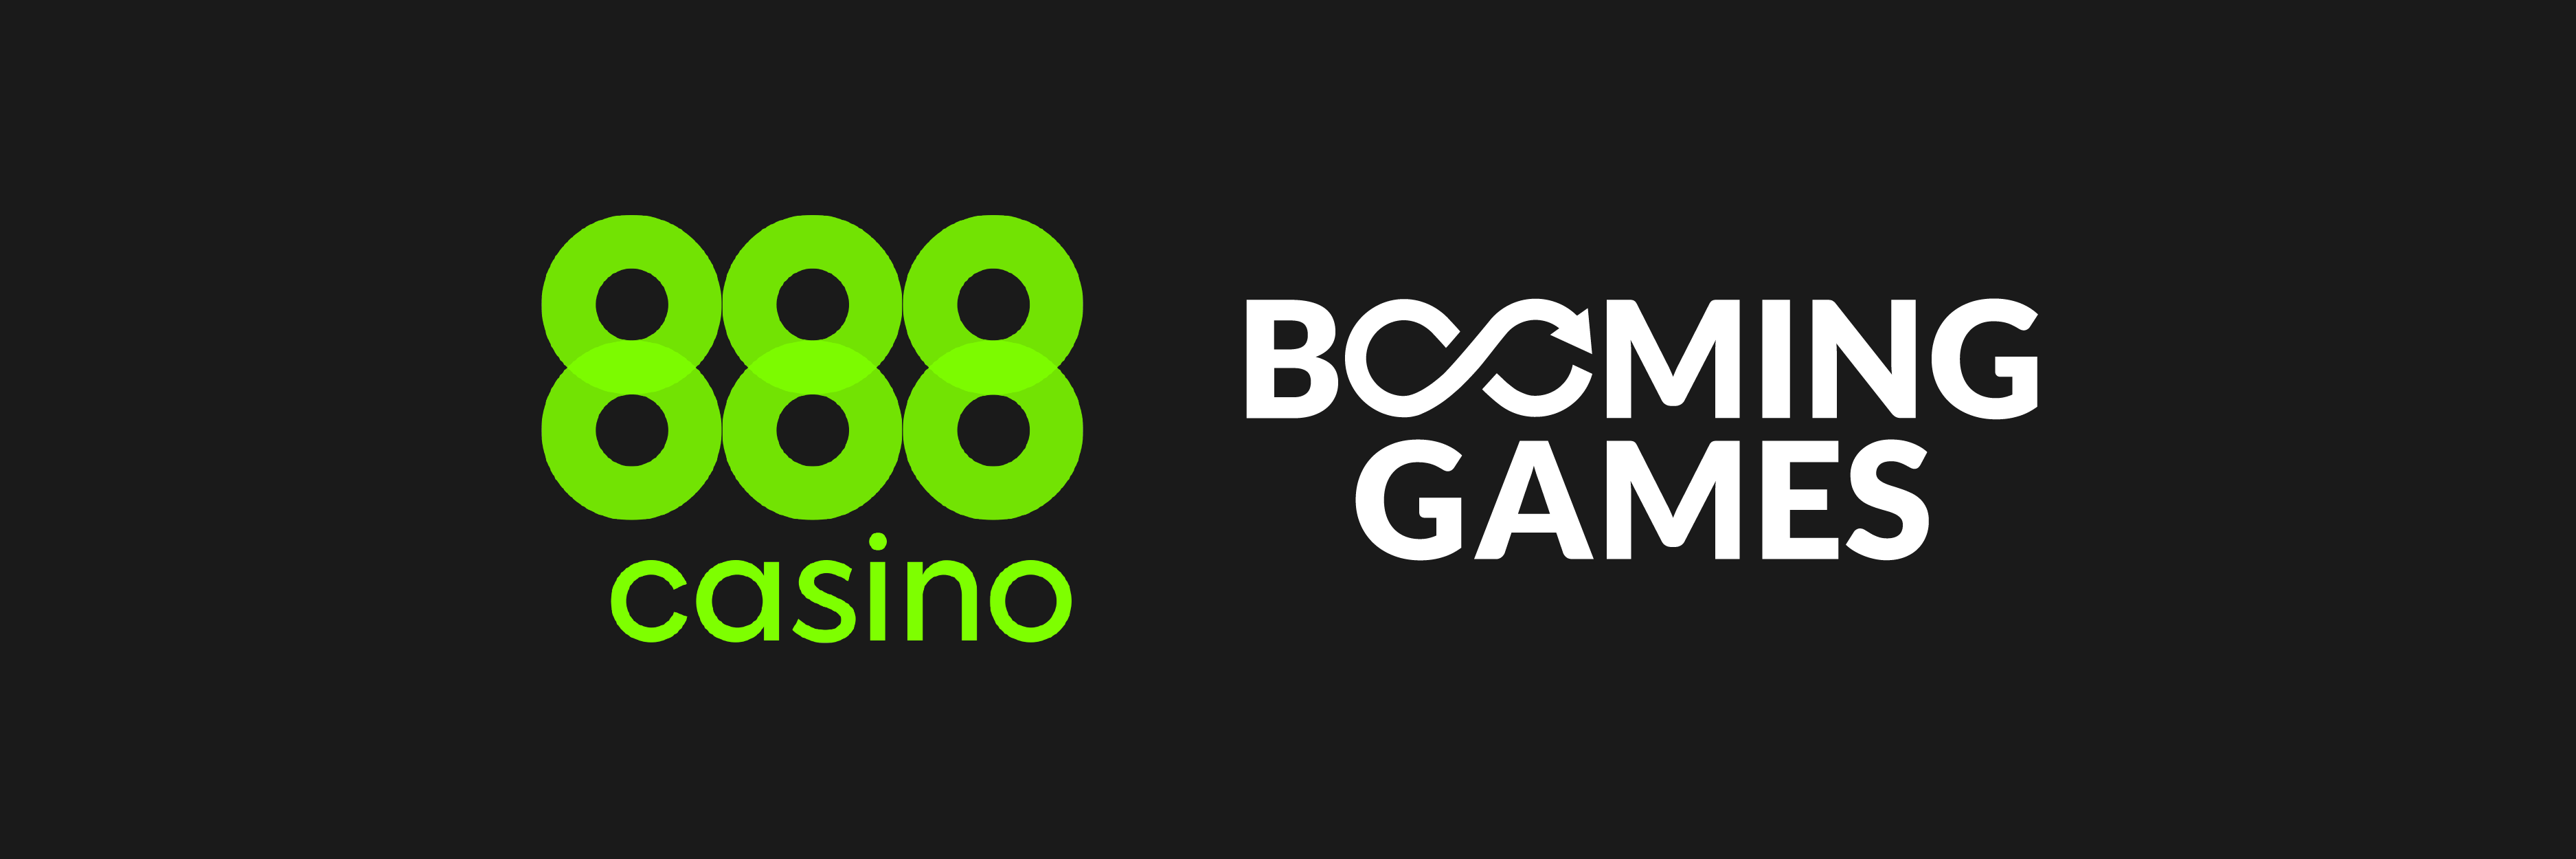 Acuerdo entre Booming Games y 888 en España